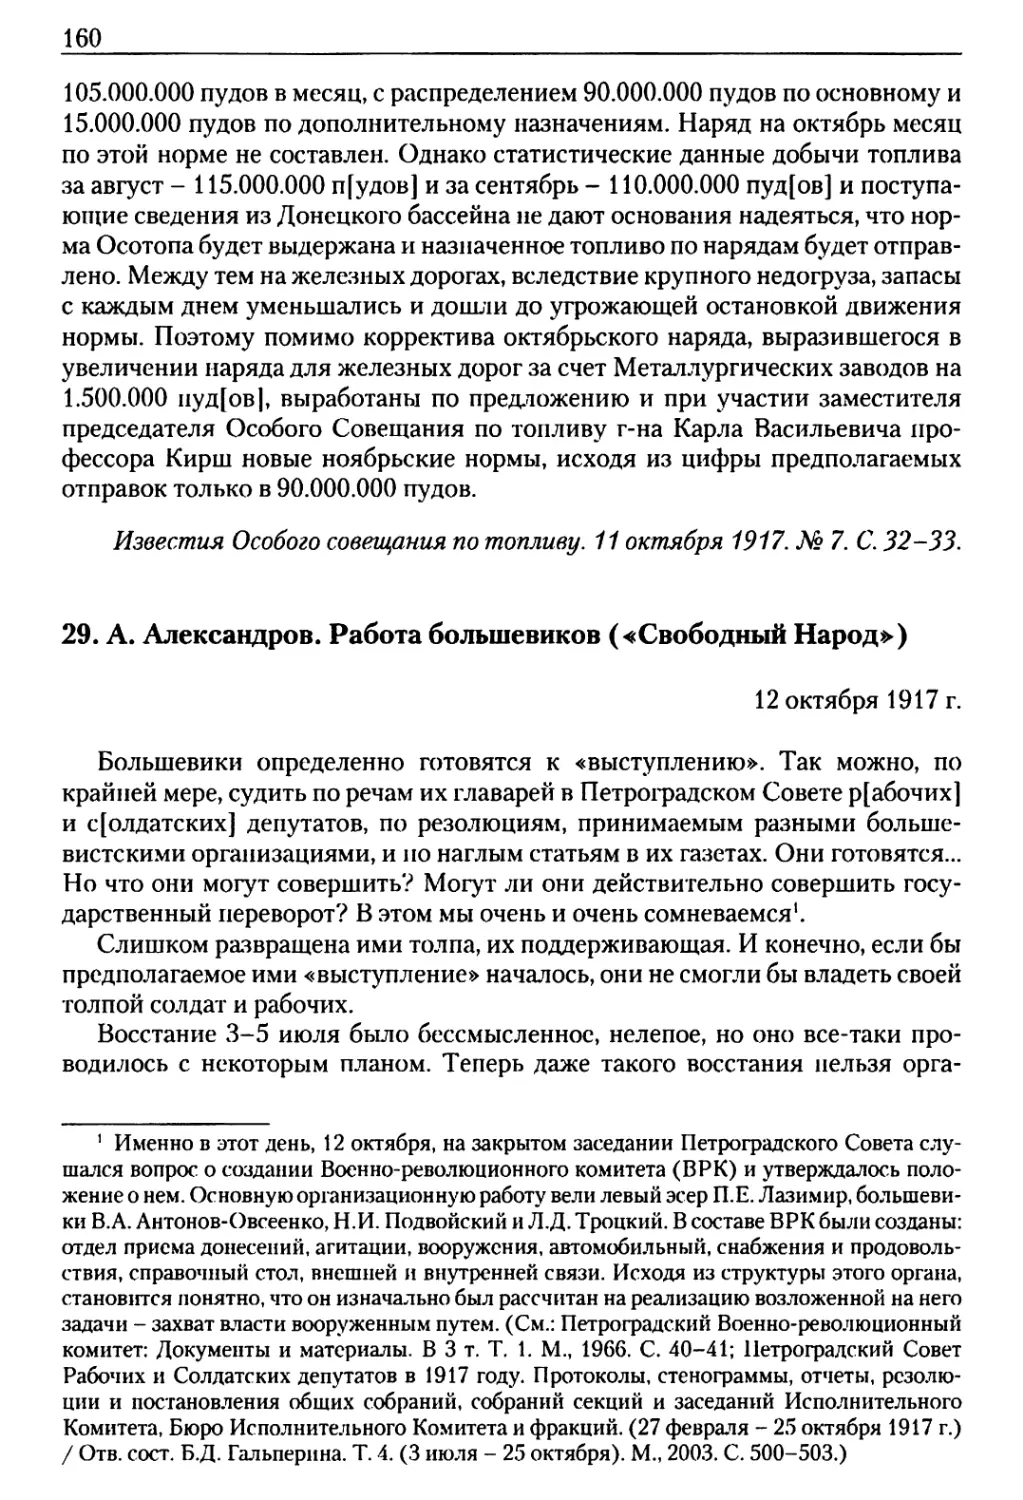 29. А. Александров. Работа большевиков